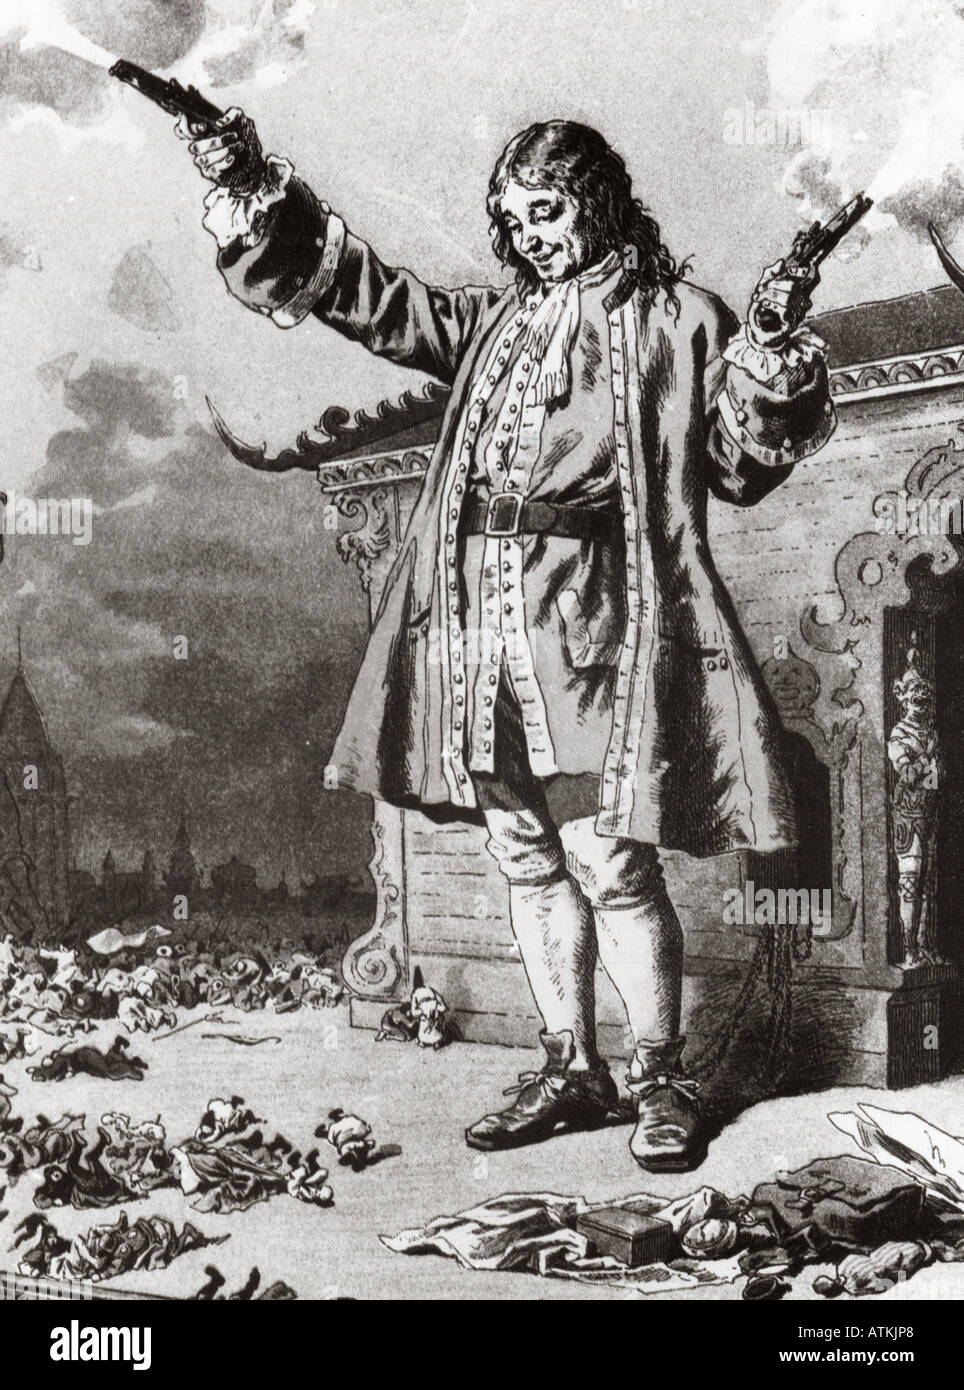 Les voyages de Gulliver 1726 illustration pour le roman de Jonathan Swift - voir description ci-dessous pour plus de détails Banque D'Images